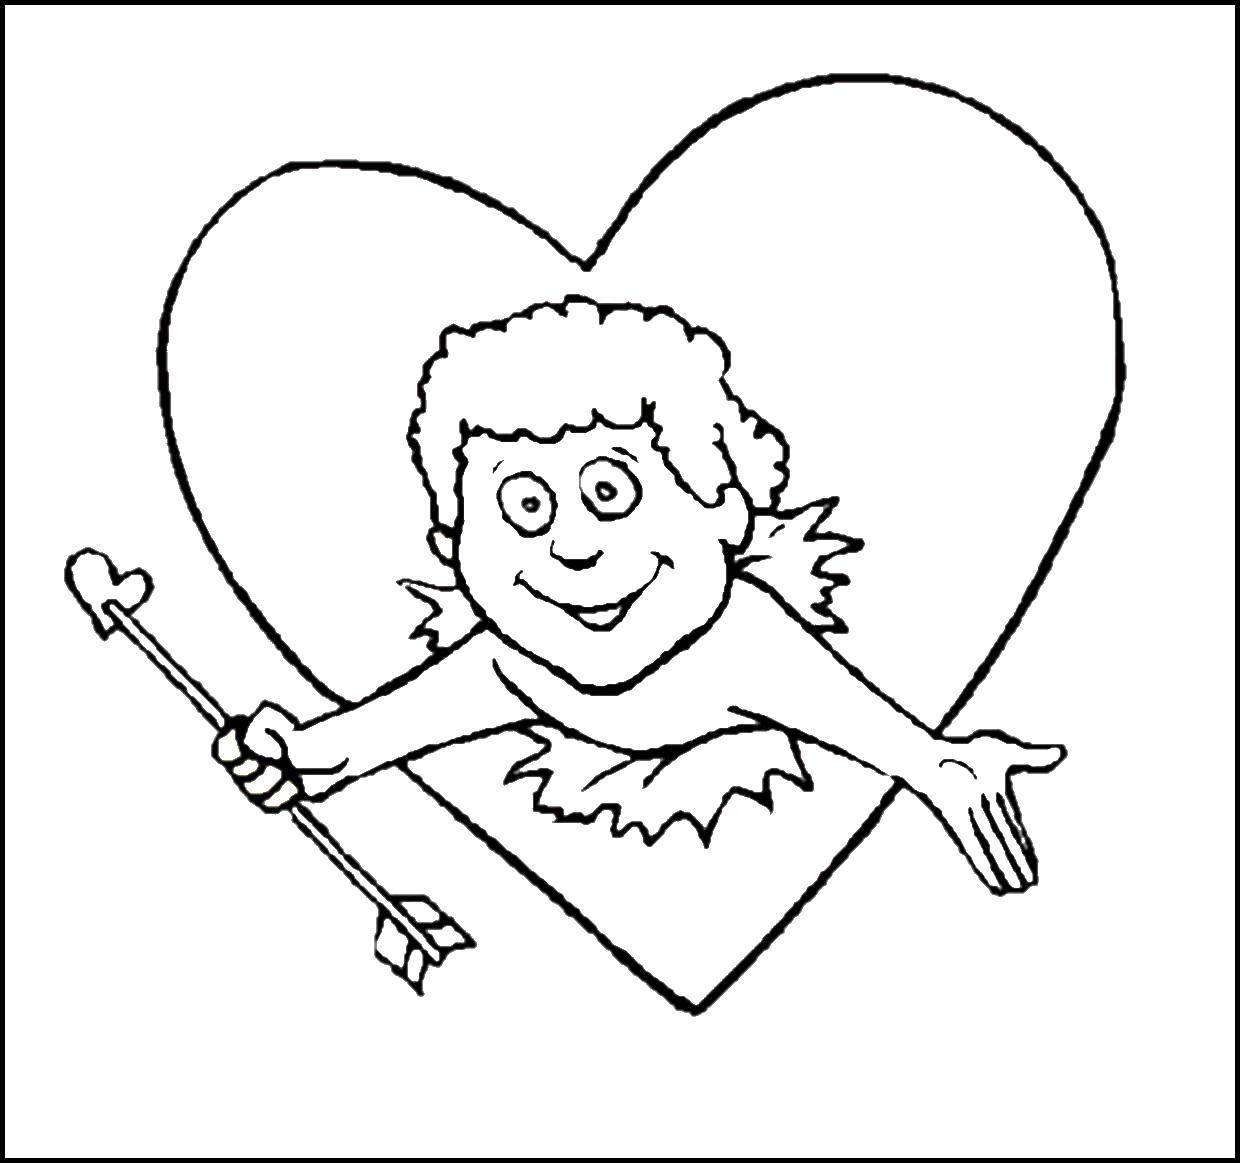 Раскраска с изображением Купидона и сердечек на День Святого Валентина (любовь, Купидон)